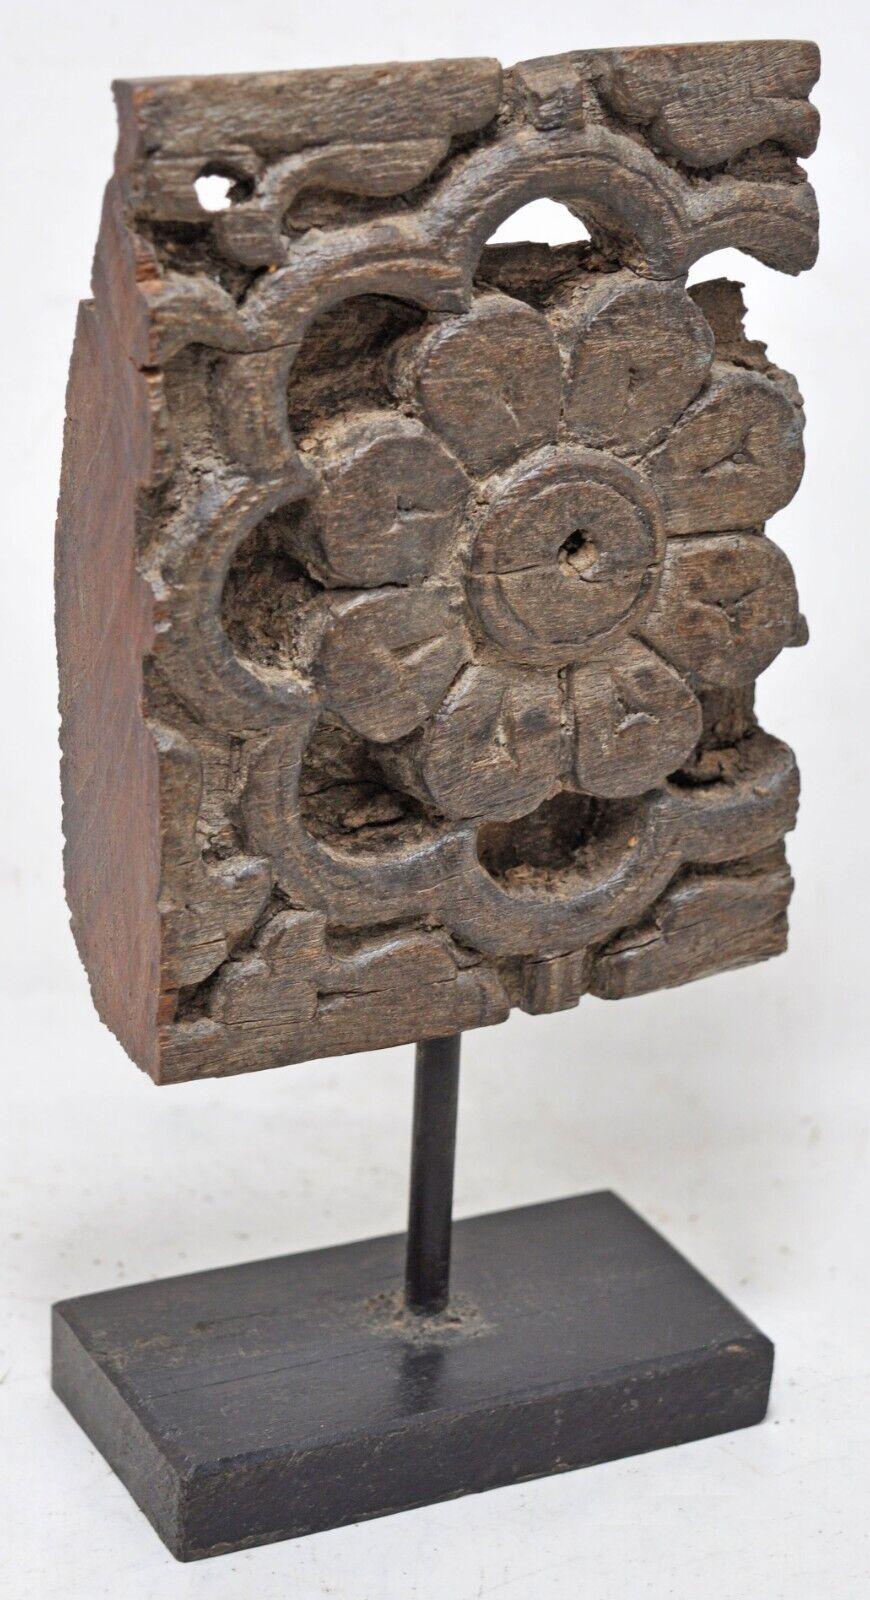 Kollektion von 3 antiken südasiatischen architektonischen Fragmenten auf Ständern

Anonym
Südasien, wahrscheinlich Indien; erste Hälfte des 20.
Holz

Ungefähre Größen: 

7.2 x 2.2 x 9.2 in.; 
4.4 x 2.2 x 9 in.; 
6 x 3 x 9 in.

Die vorliegende Gruppe